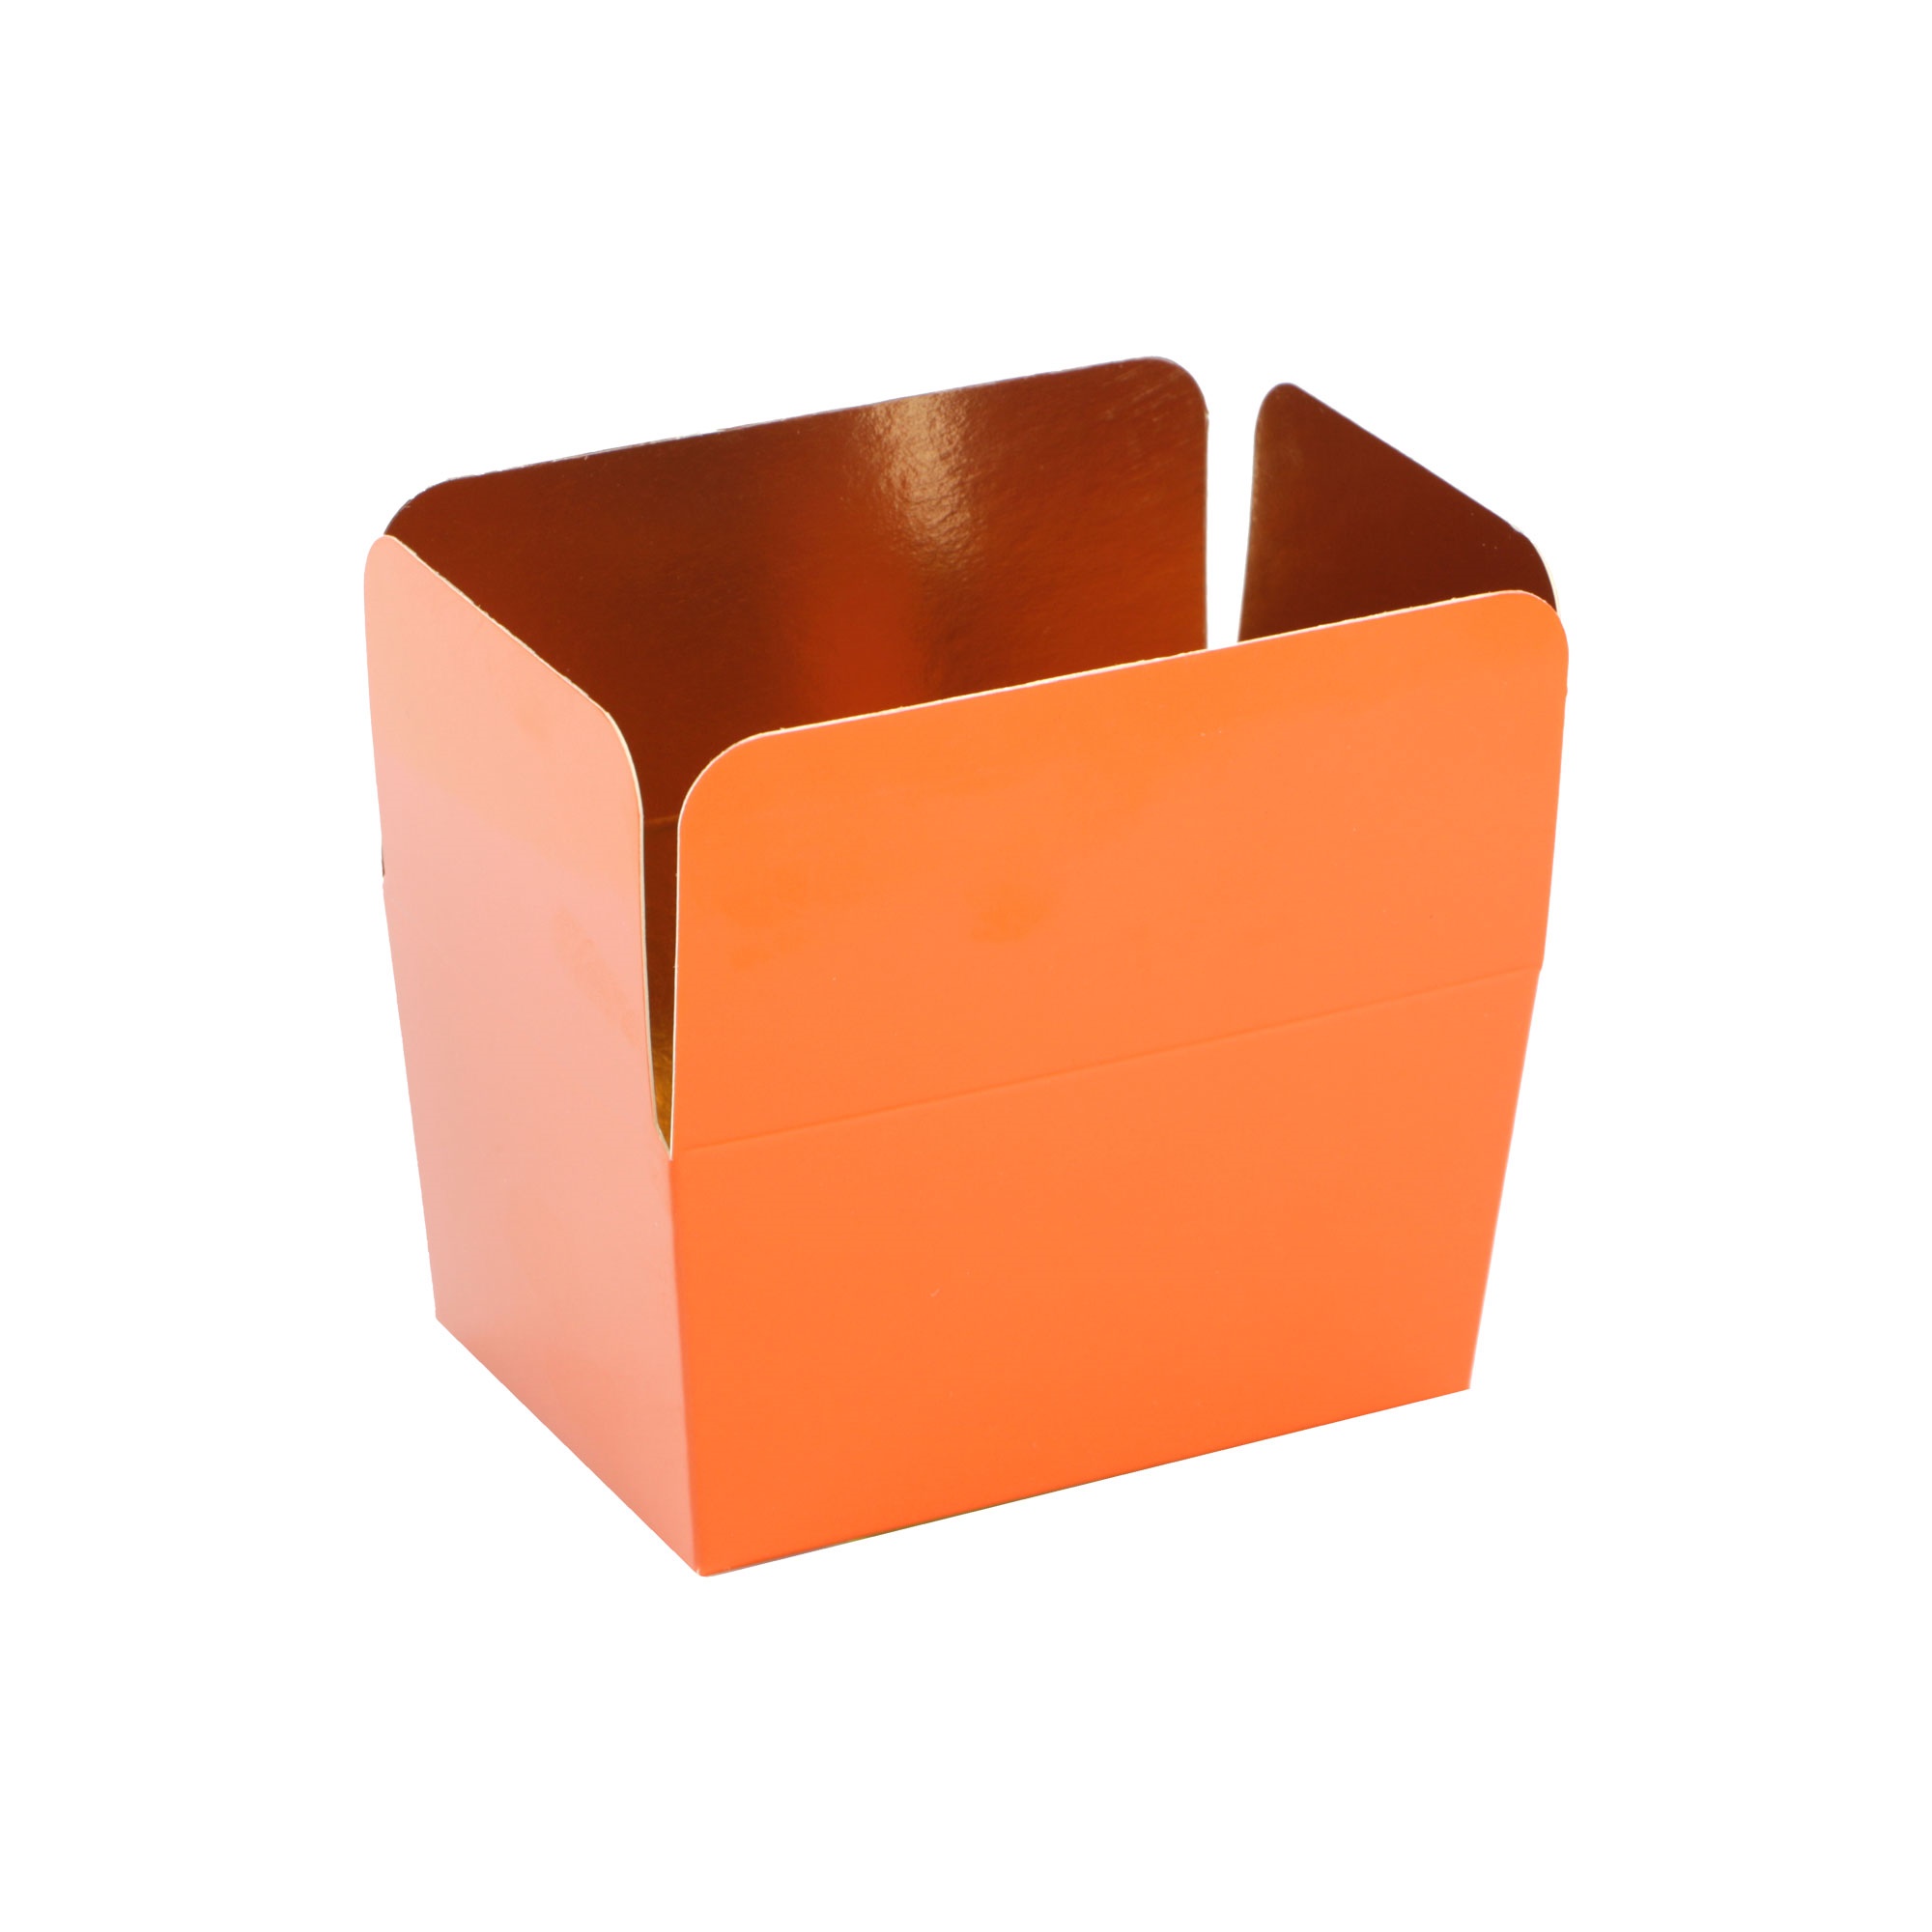 Picture of Pak à 24 luxe bonbondoos 500 gram brique (oranje)